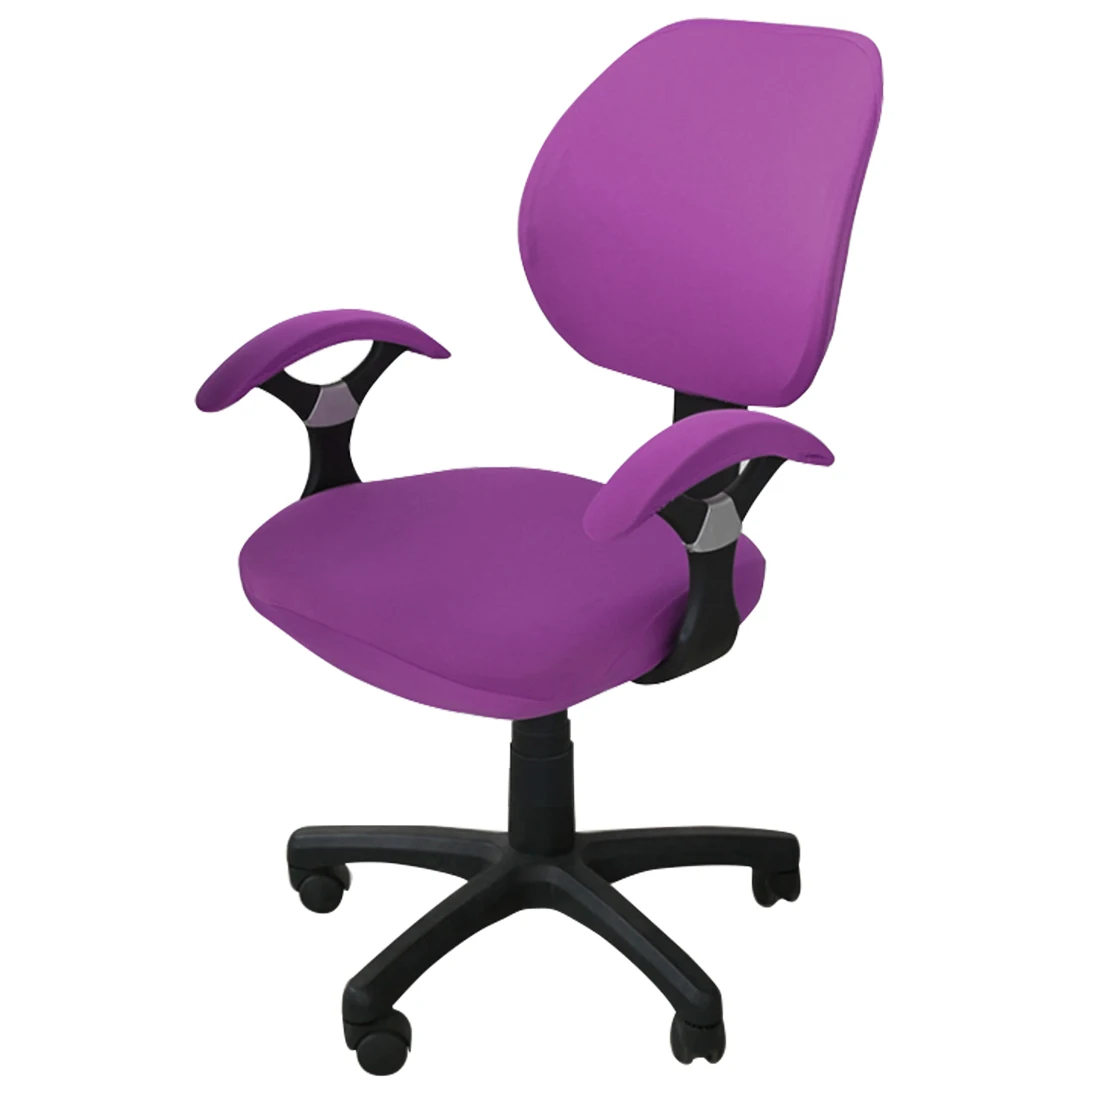 Эластичный офисный чехол на компьютерное кресло с боковой рукояткой чехол для кресла Recouvre шезлонг стрейч вращающийся чехол для кресла без стула - Цвет: Magenta